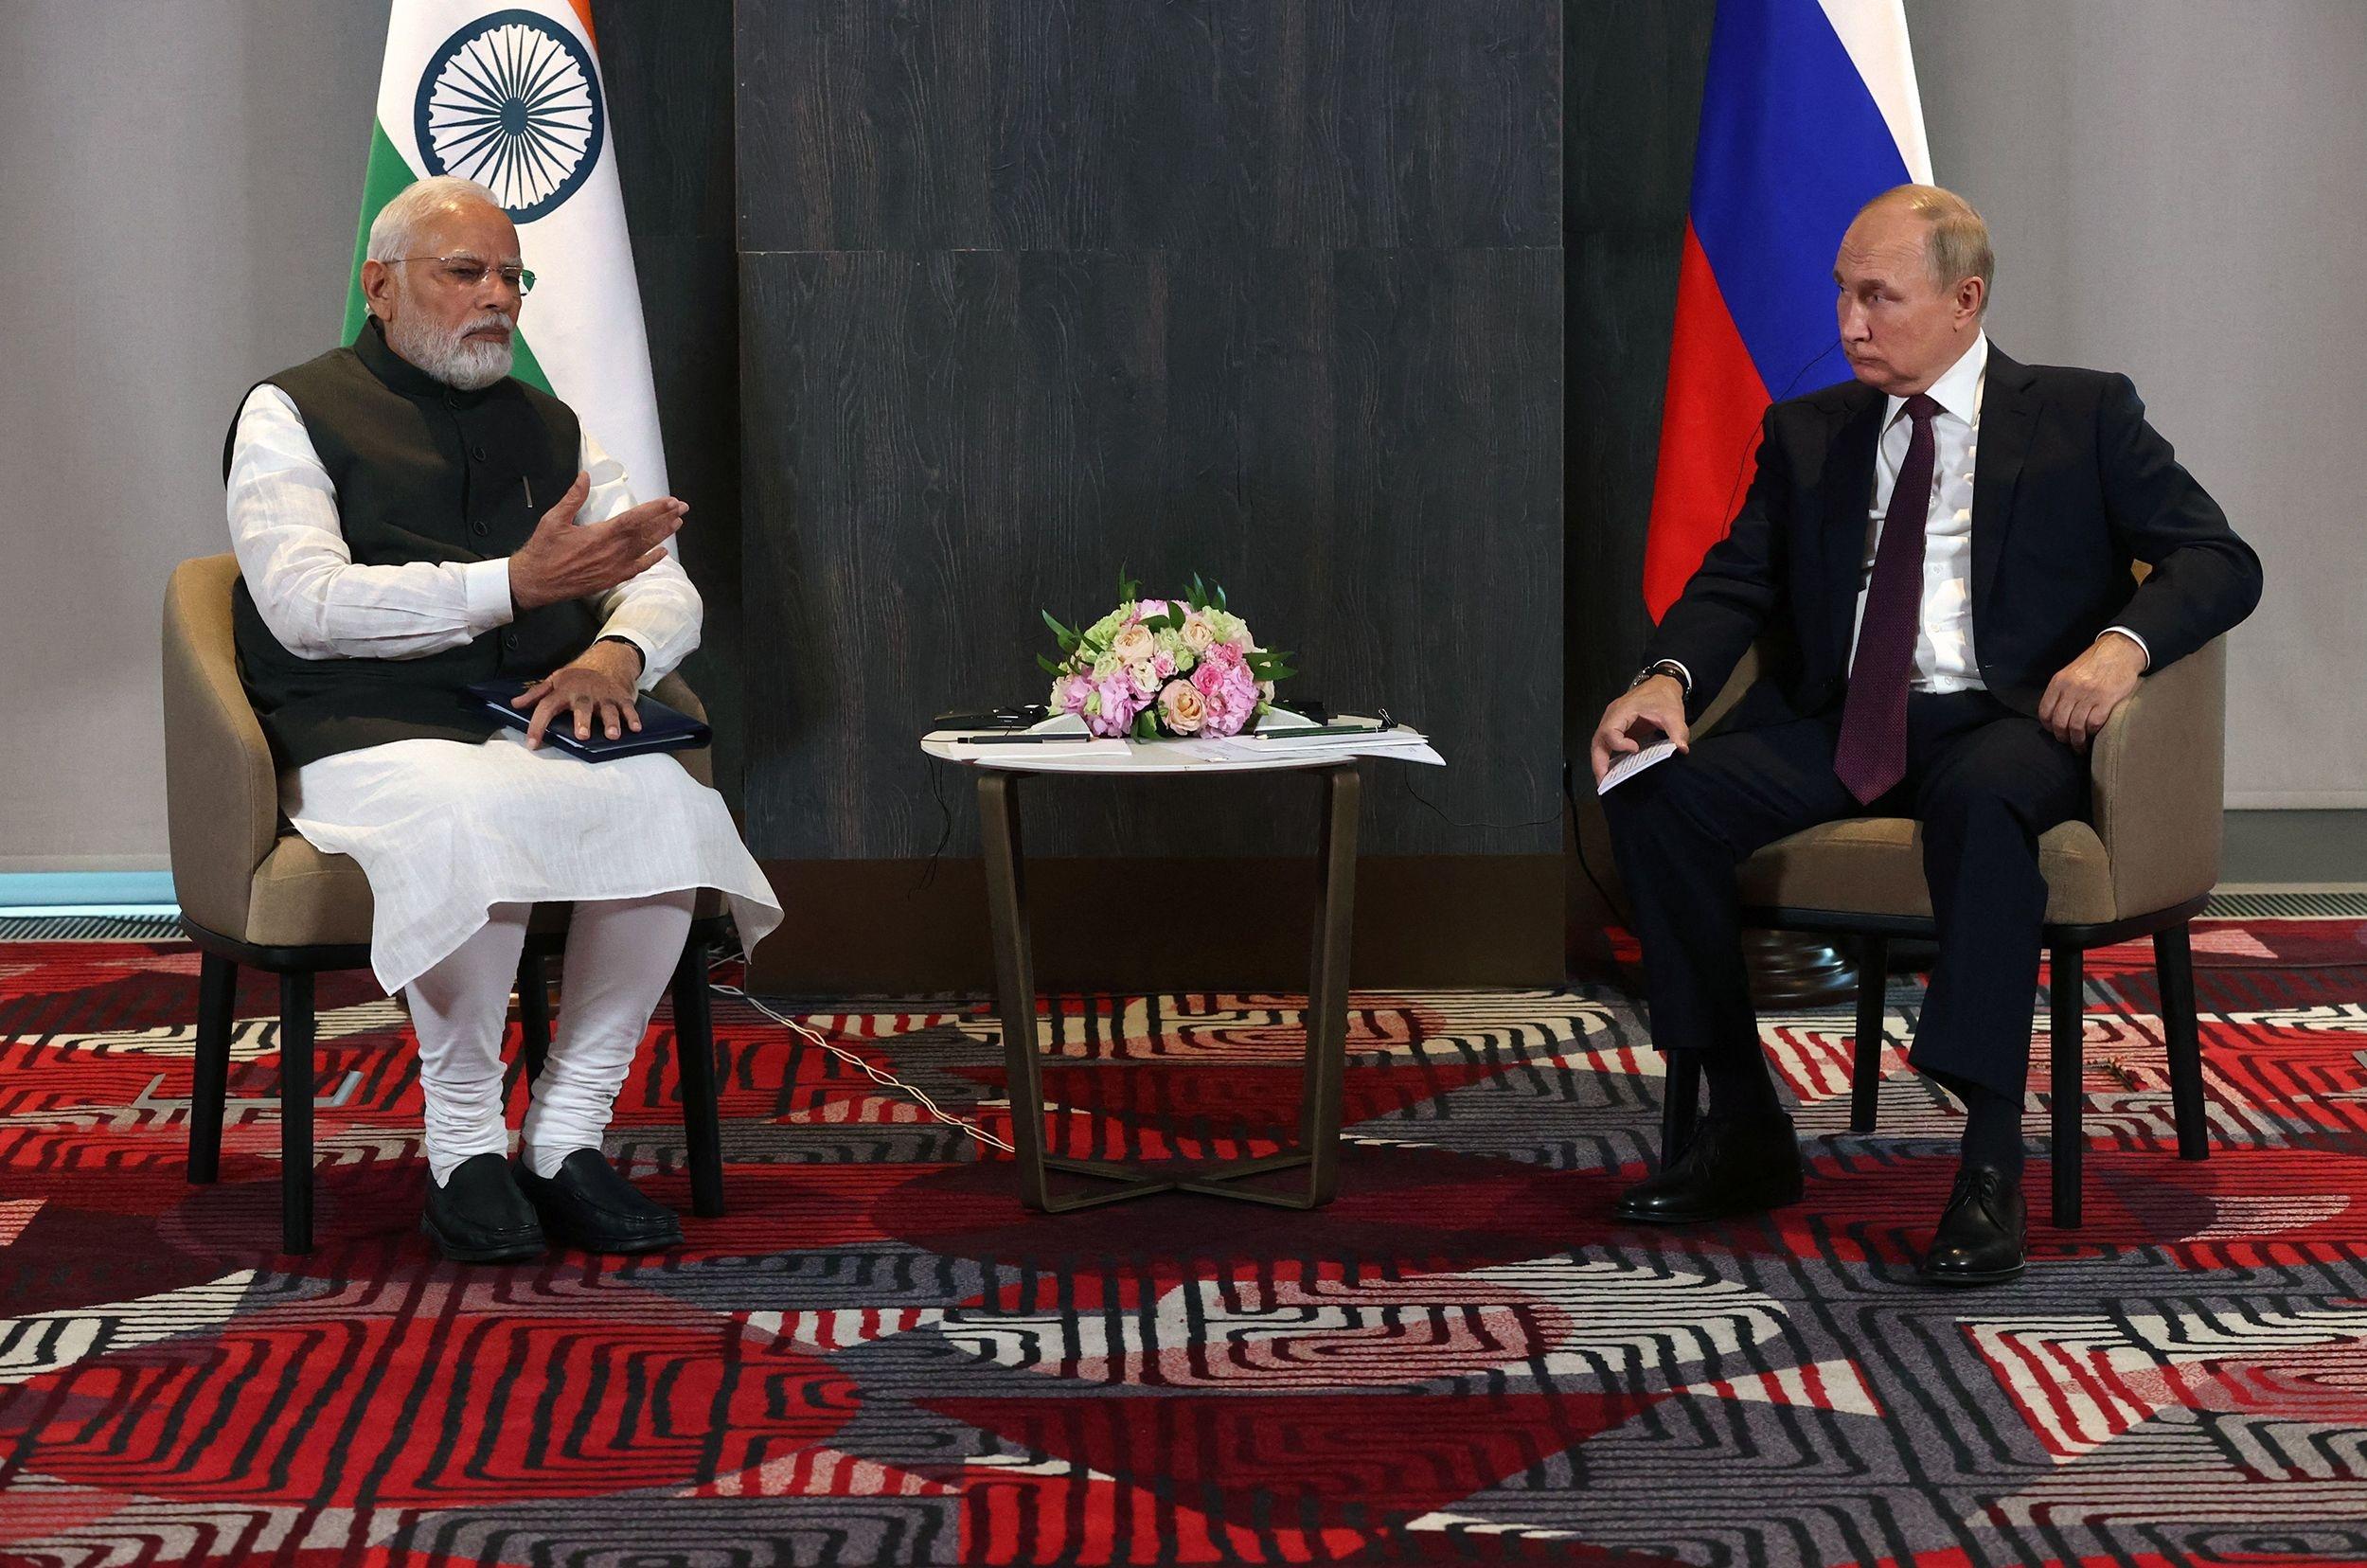 Thủ tướng Modi và Tổng thống Putin hội đàm hồi tháng 9. Ảnh: CNN.